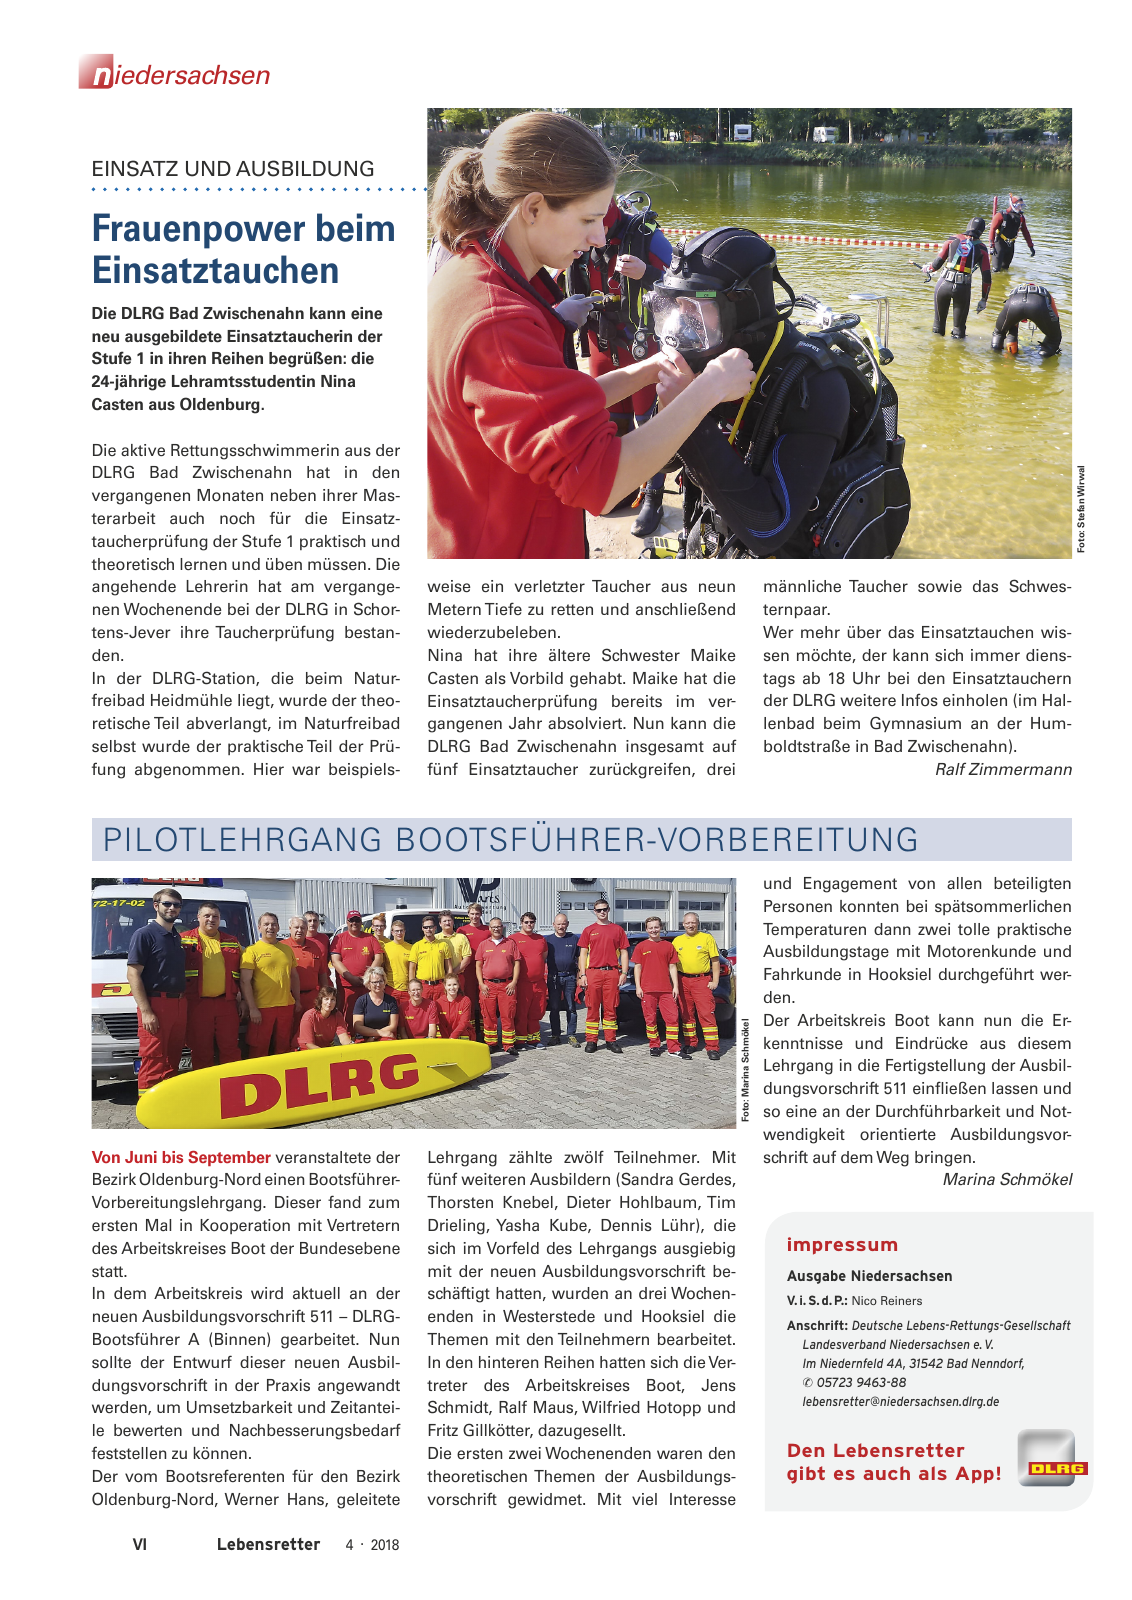 Vorschau Lebensretter 4/2018 - Regionalausgabe Niedersachsen Seite 8